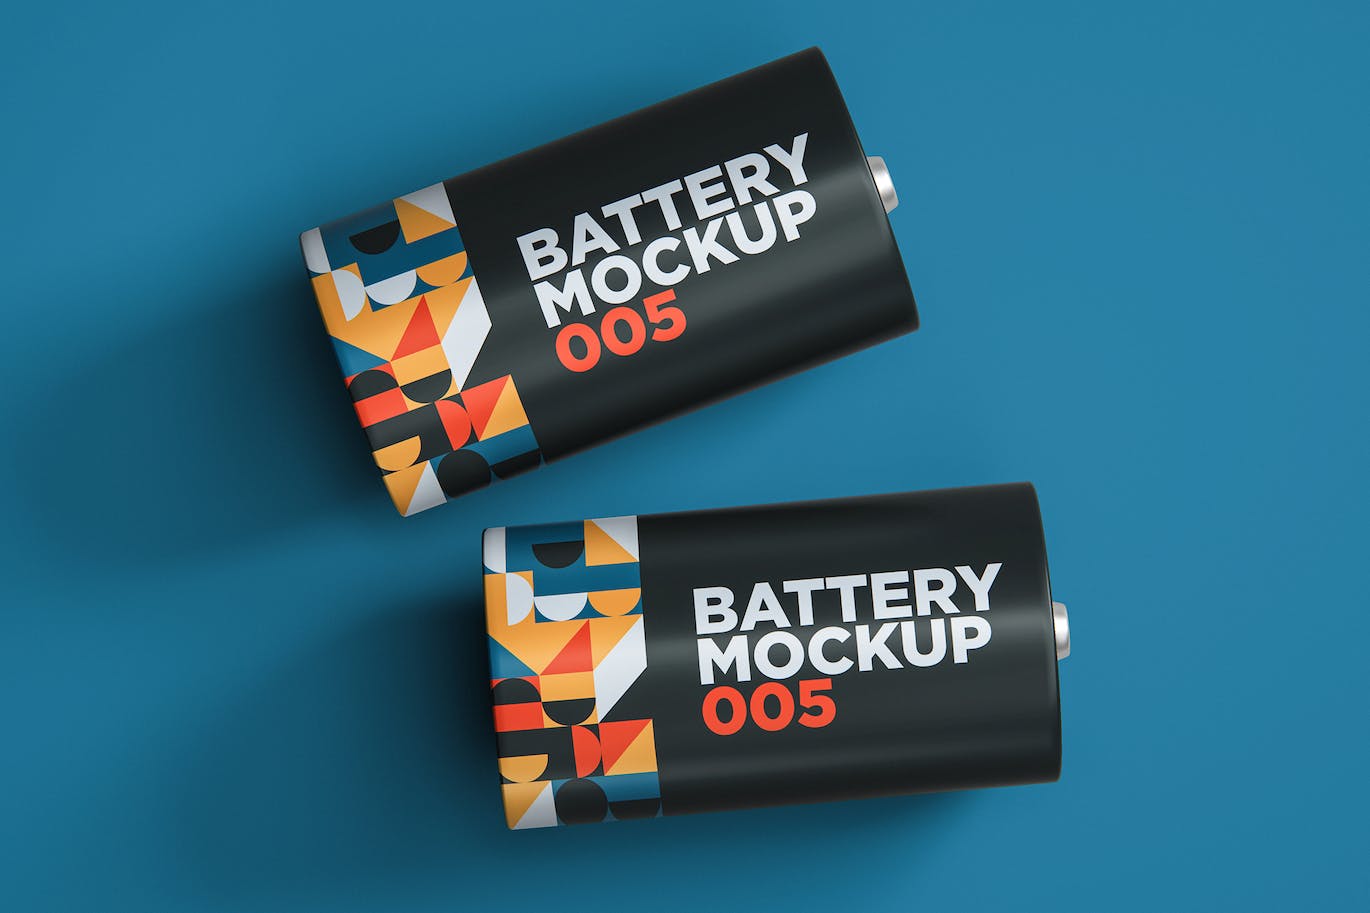 圆形电池包装设计样机v5 Battery Mockup 005 样机素材 第1张